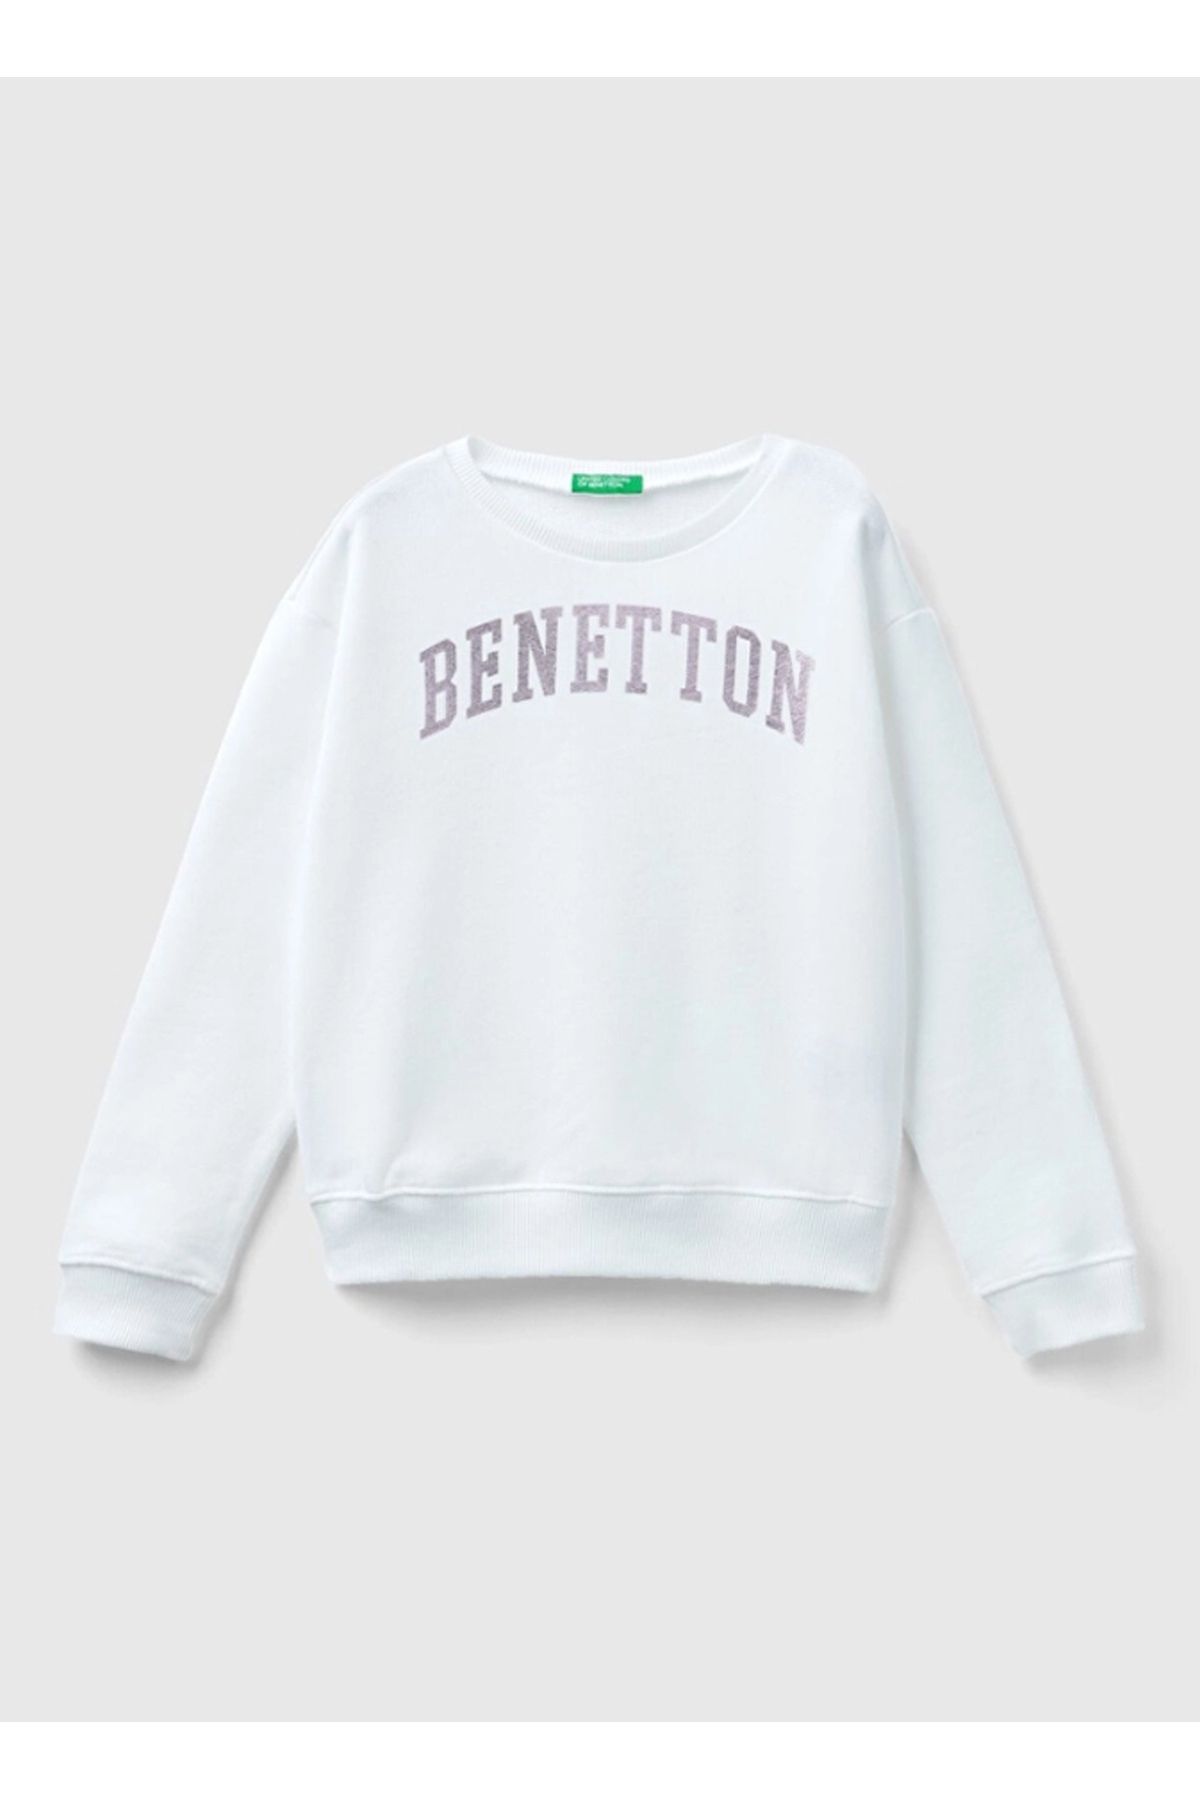 Benetton Kadın Beyaz Sweatshırt 3j68c10h6